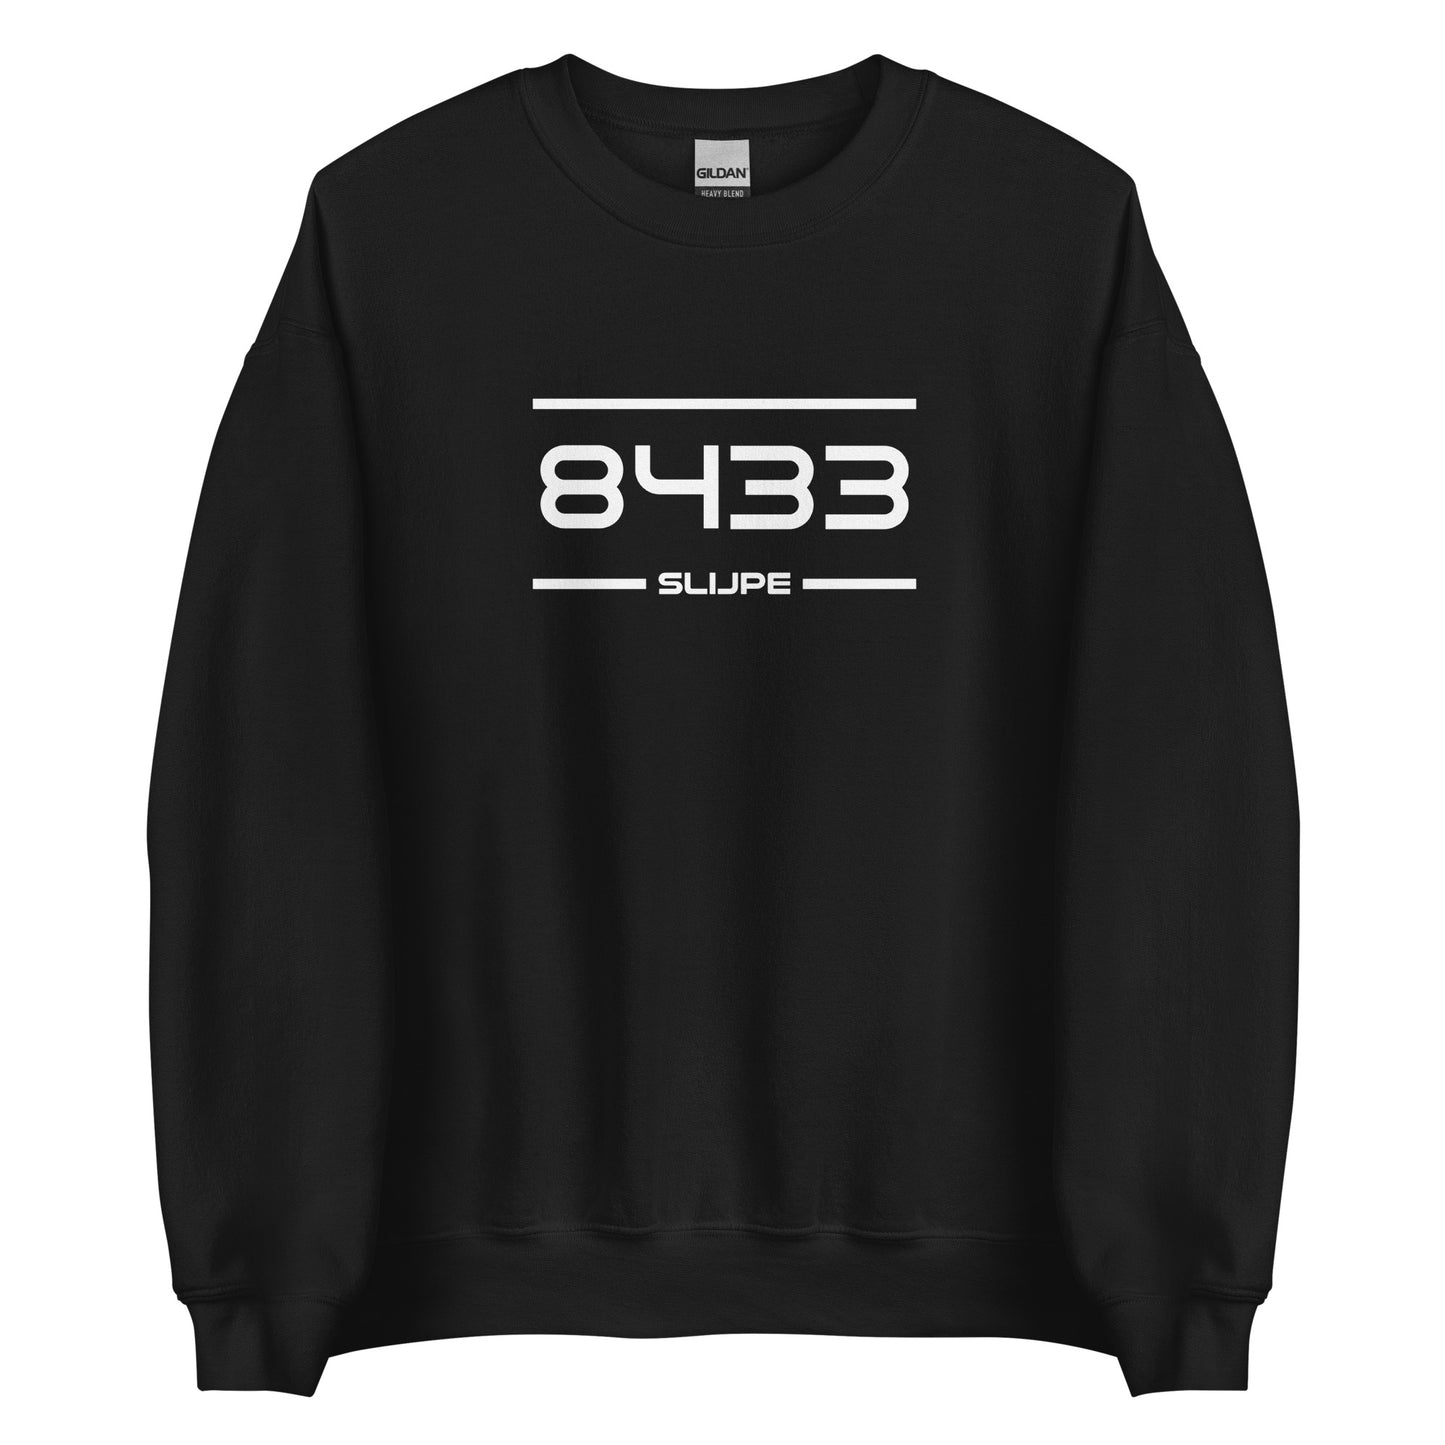 Sweater - 8433 - Slijpe (M/V)